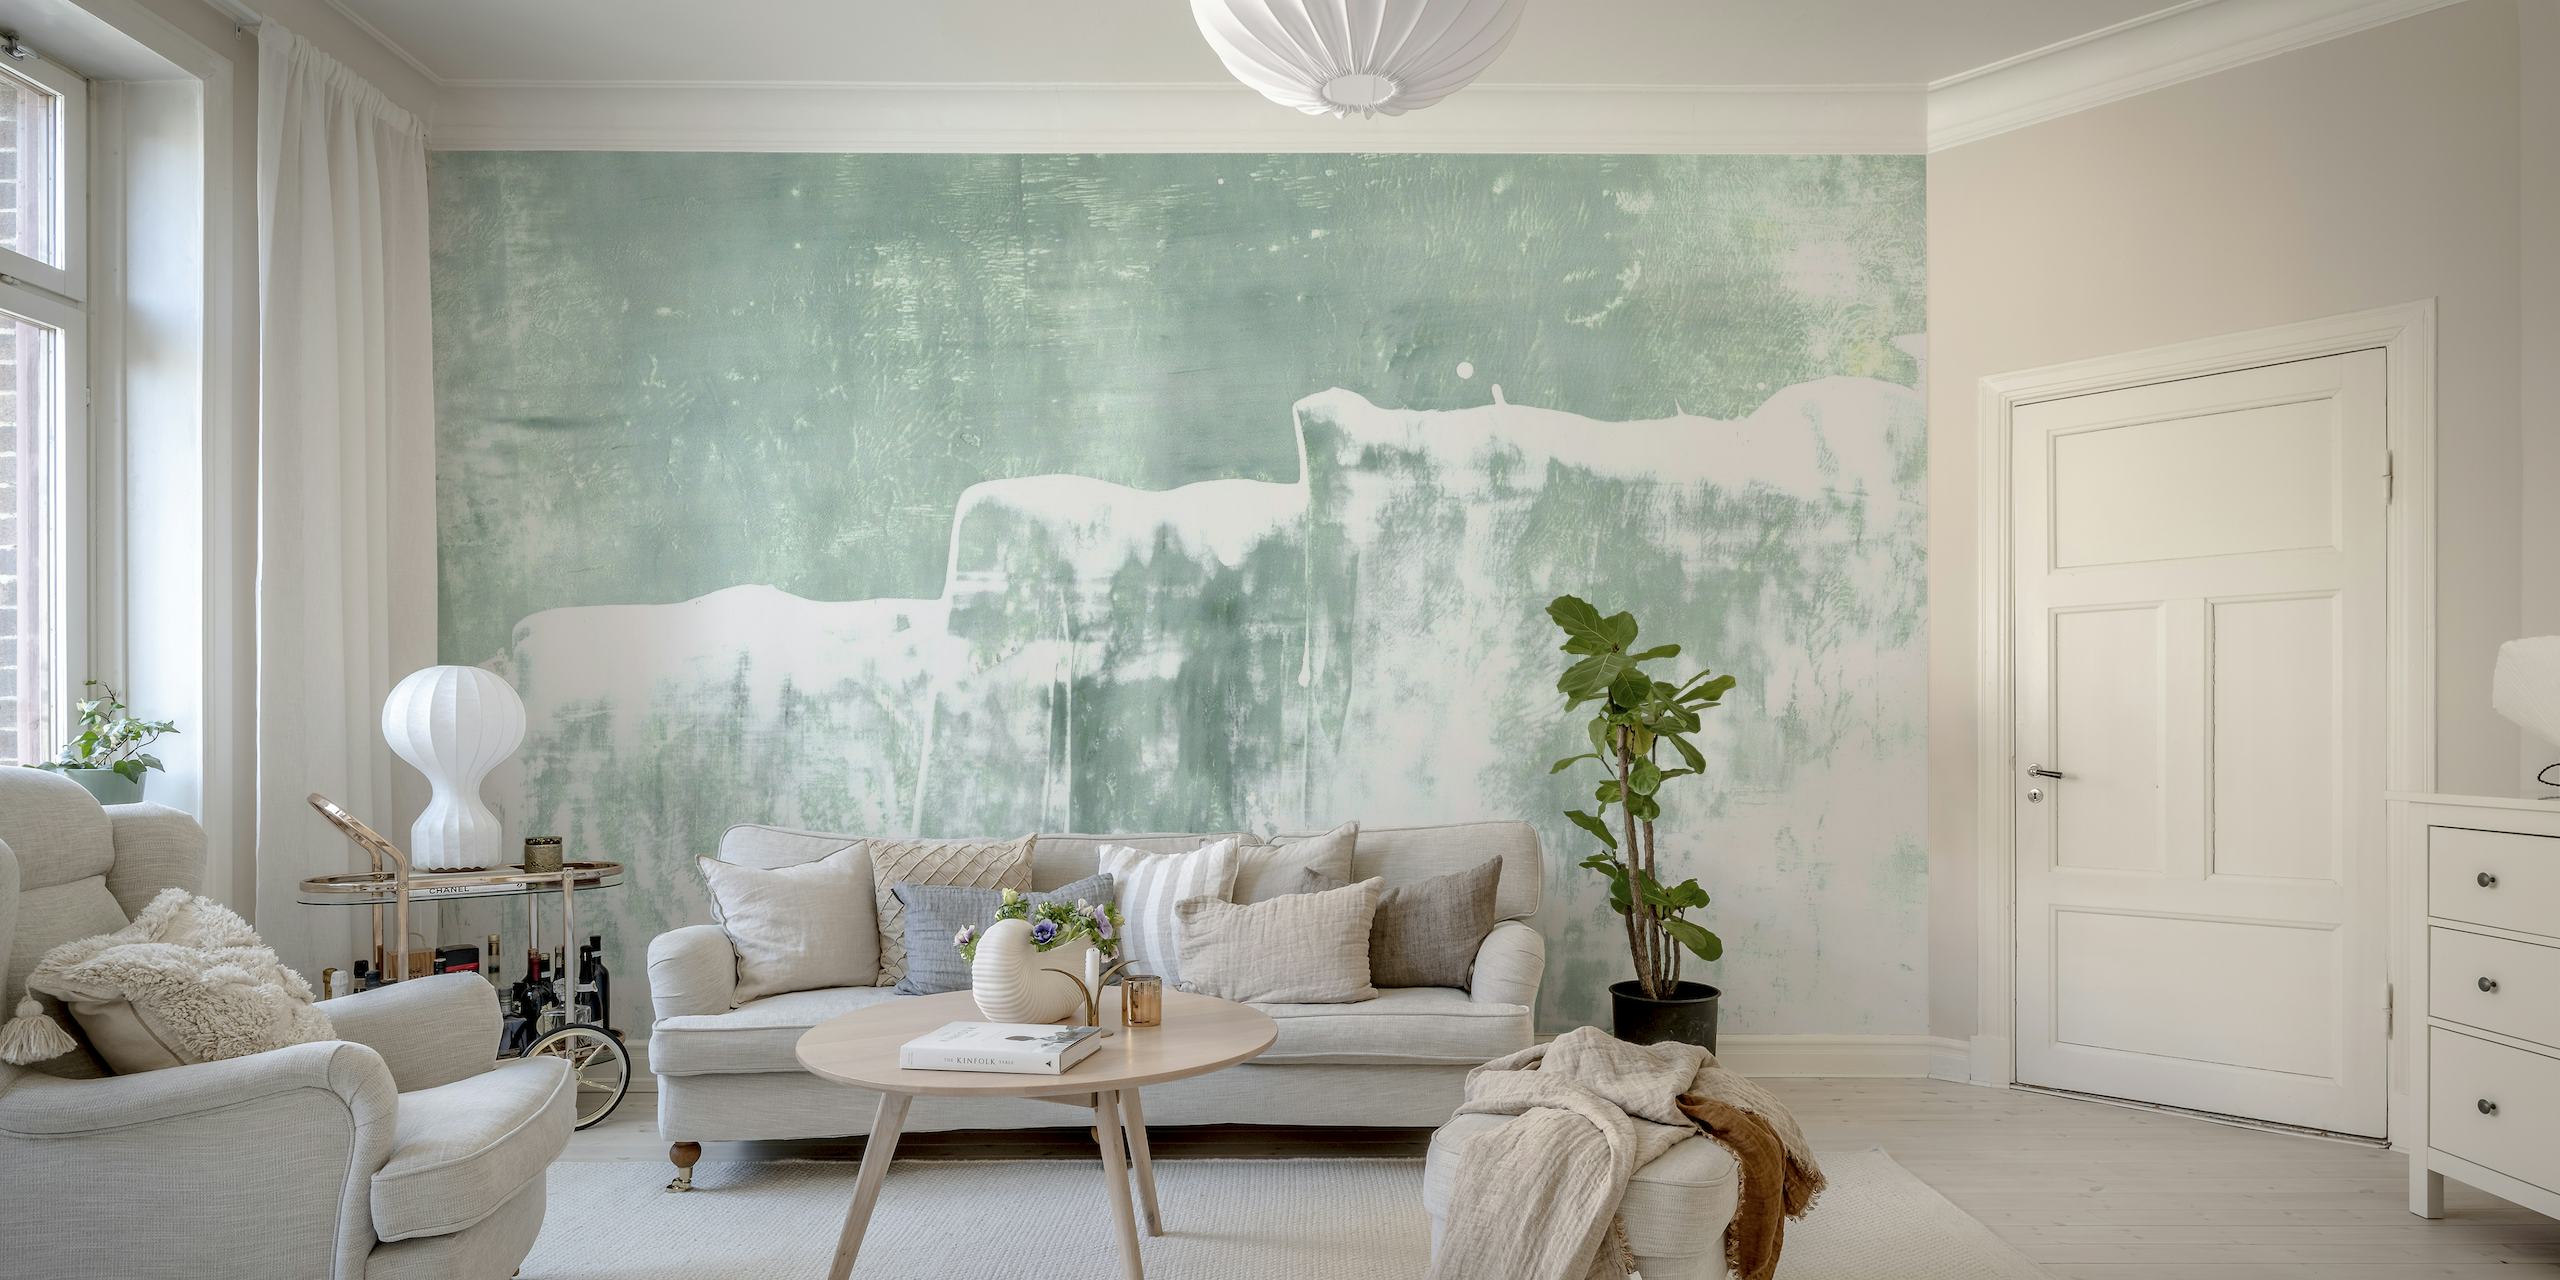 Wandbild „Mint Waves Abstract Painting“ mit sanften grünen und weißen Pinselstrichen